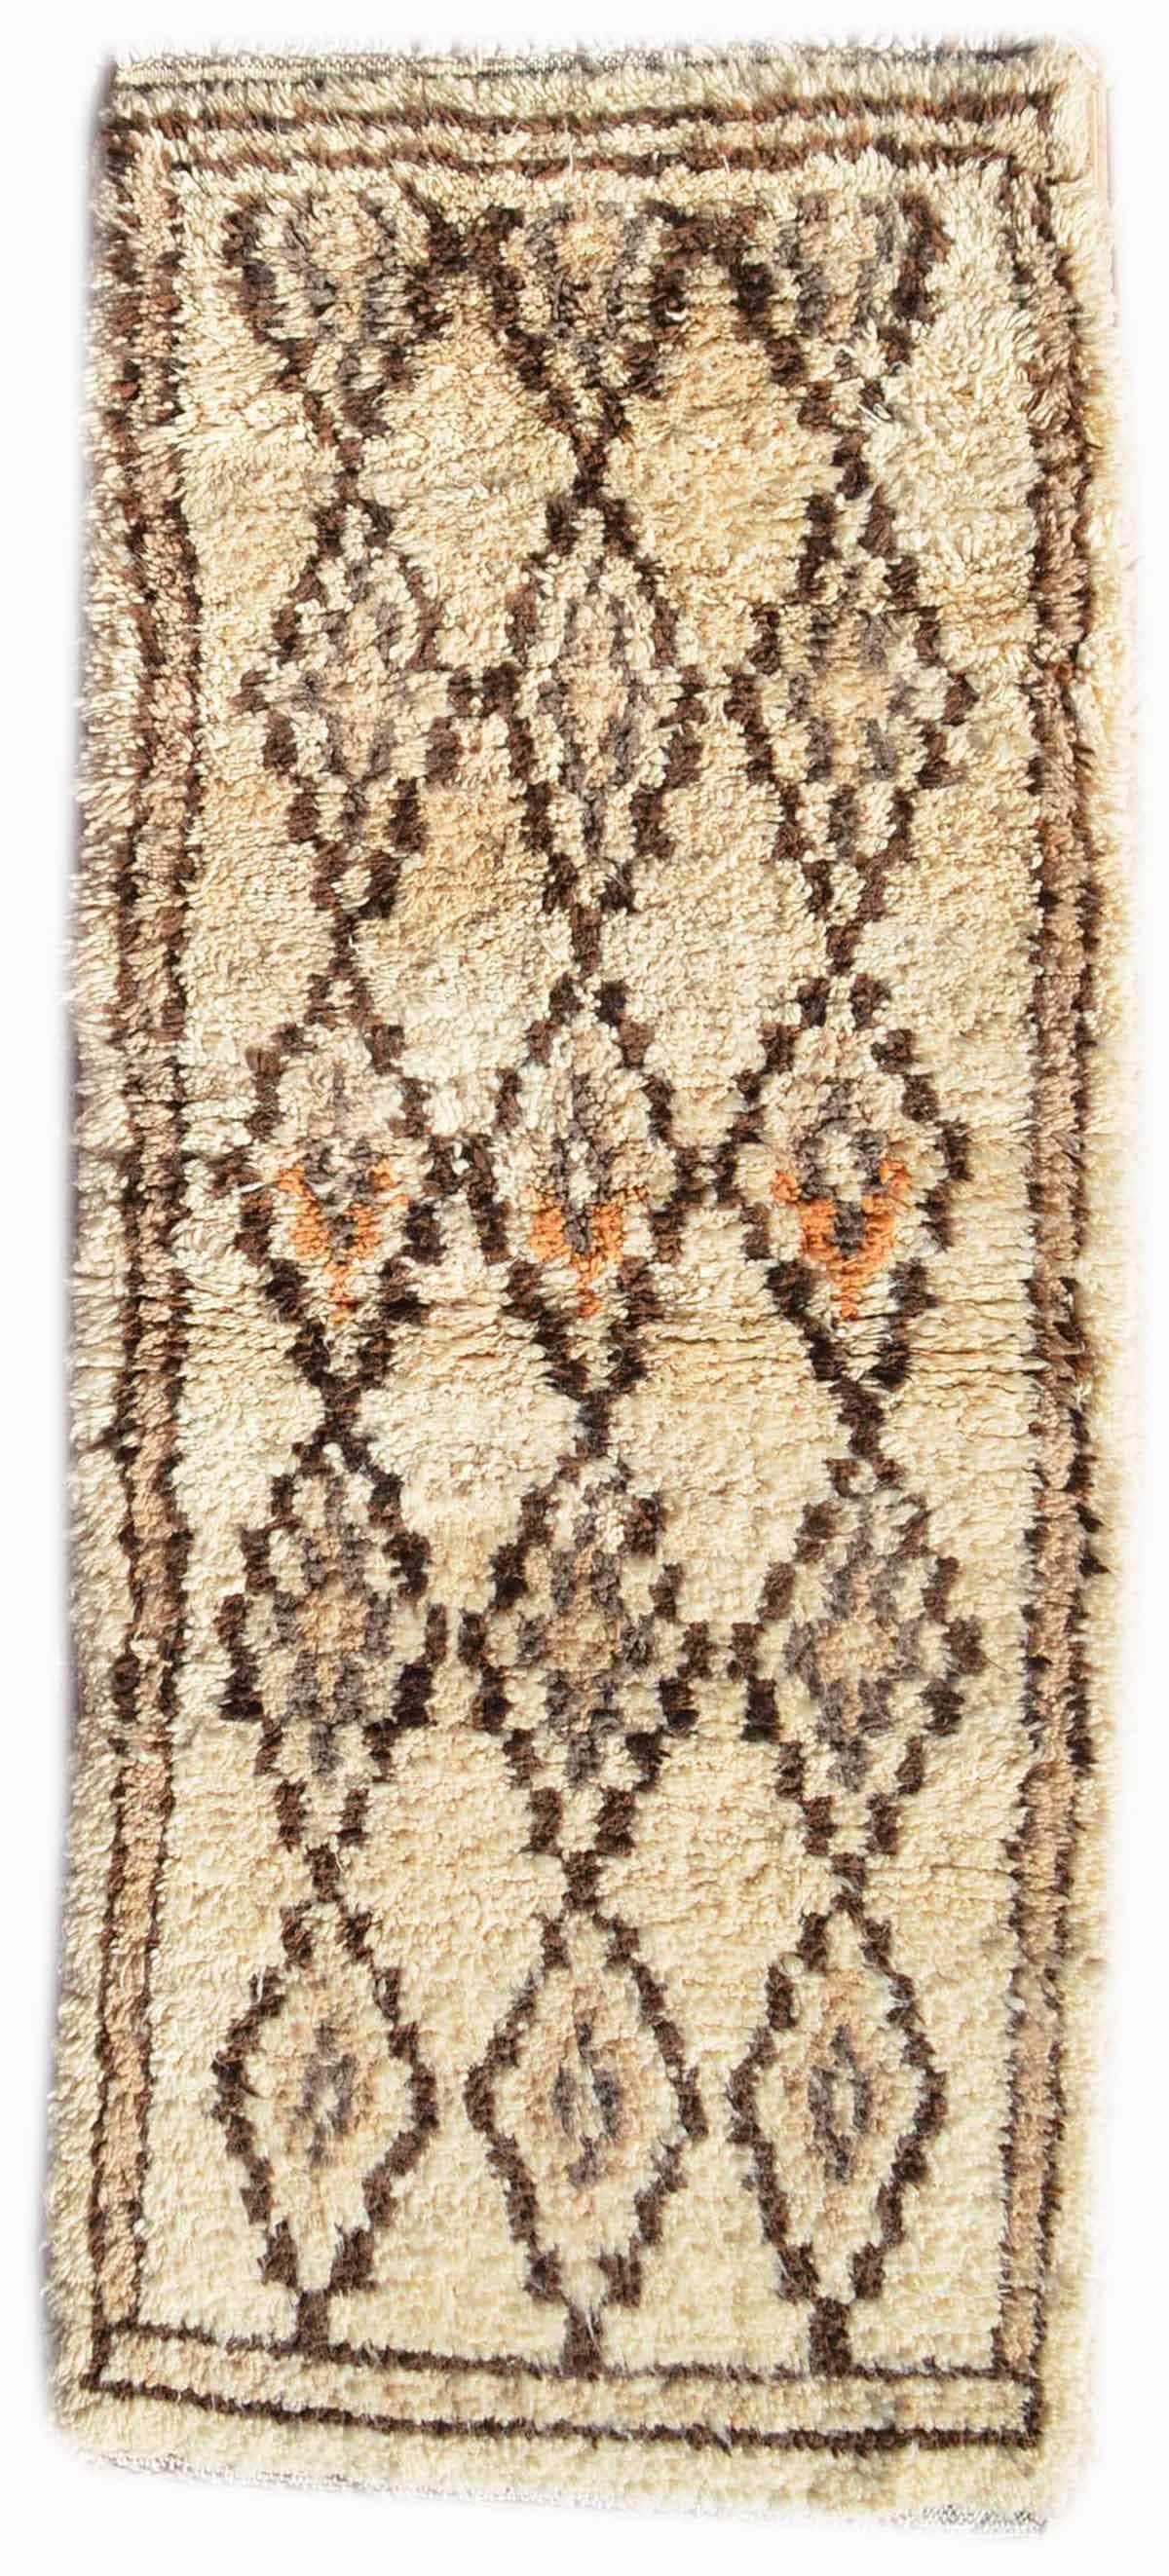   vintage floral rugs